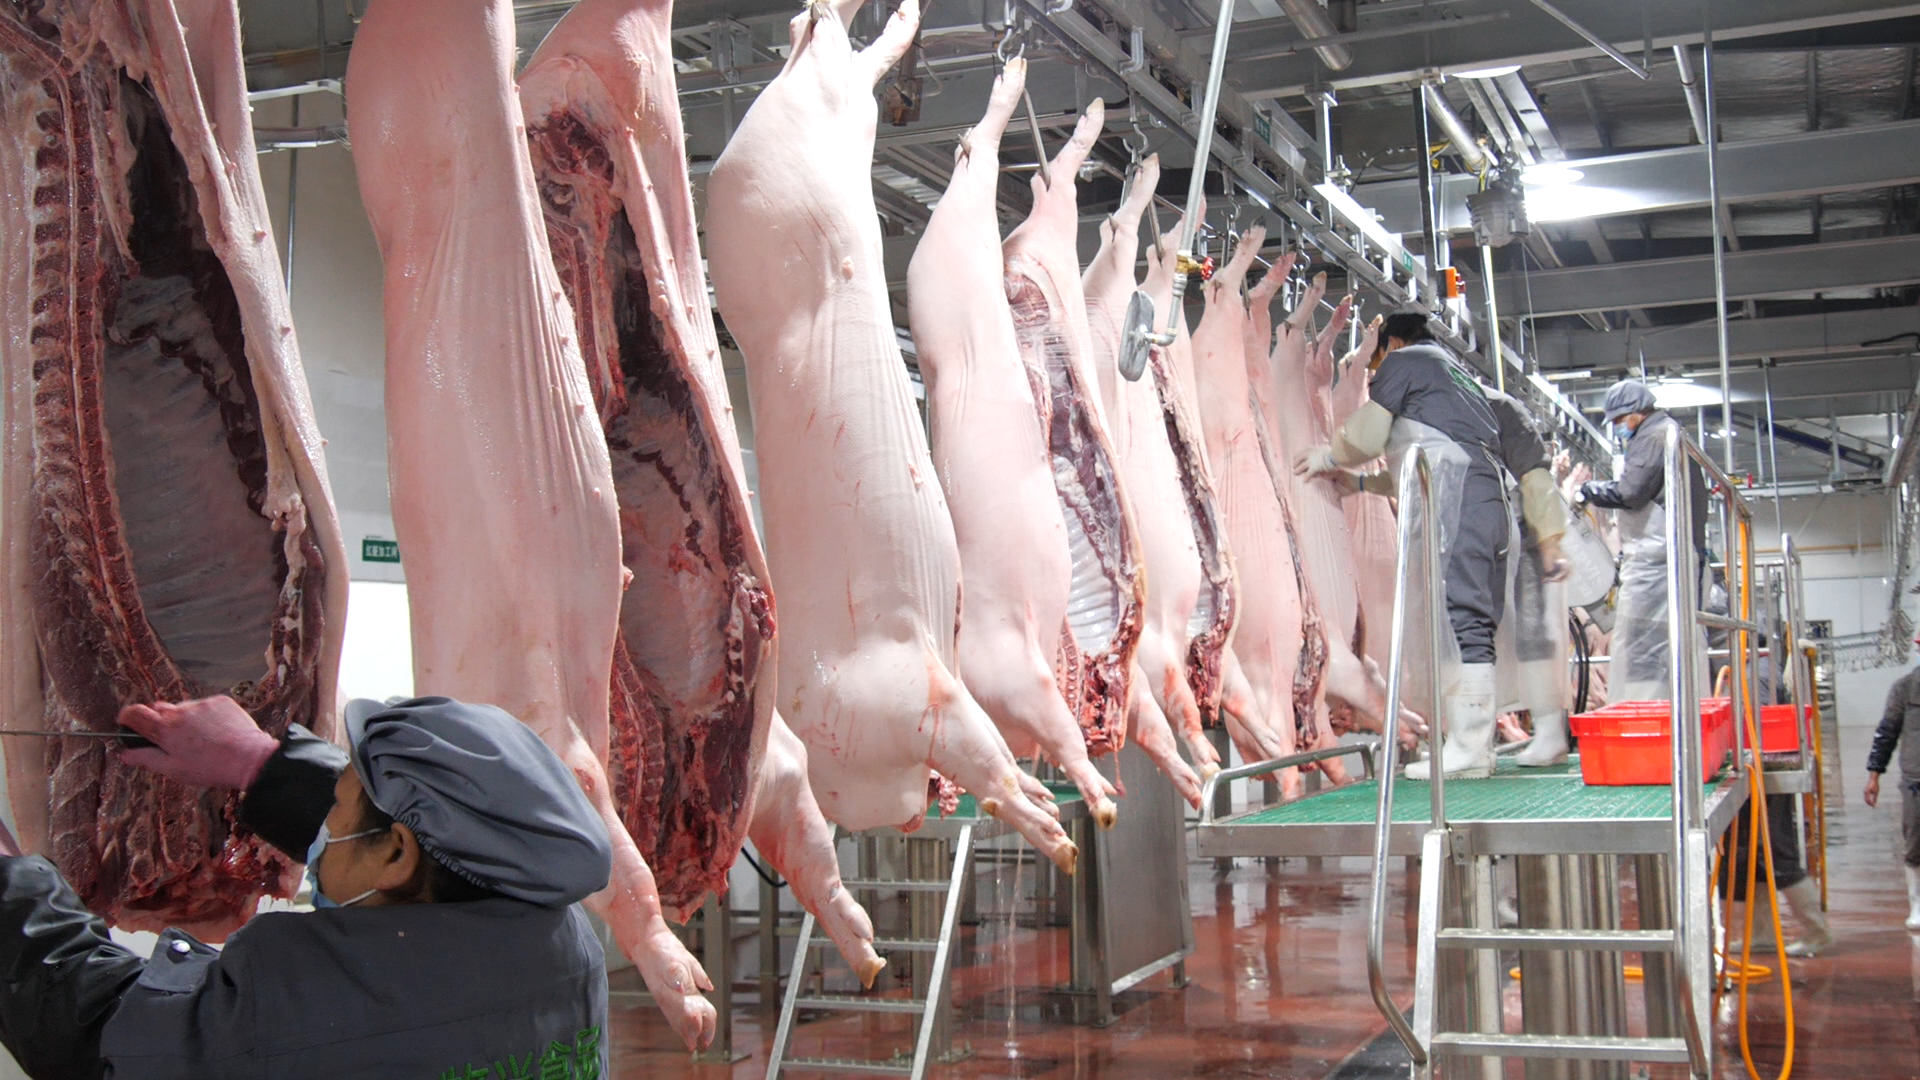 作为我县唯一一家定点生猪屠宰企业,牧兴有机食品有限公司拥有国内